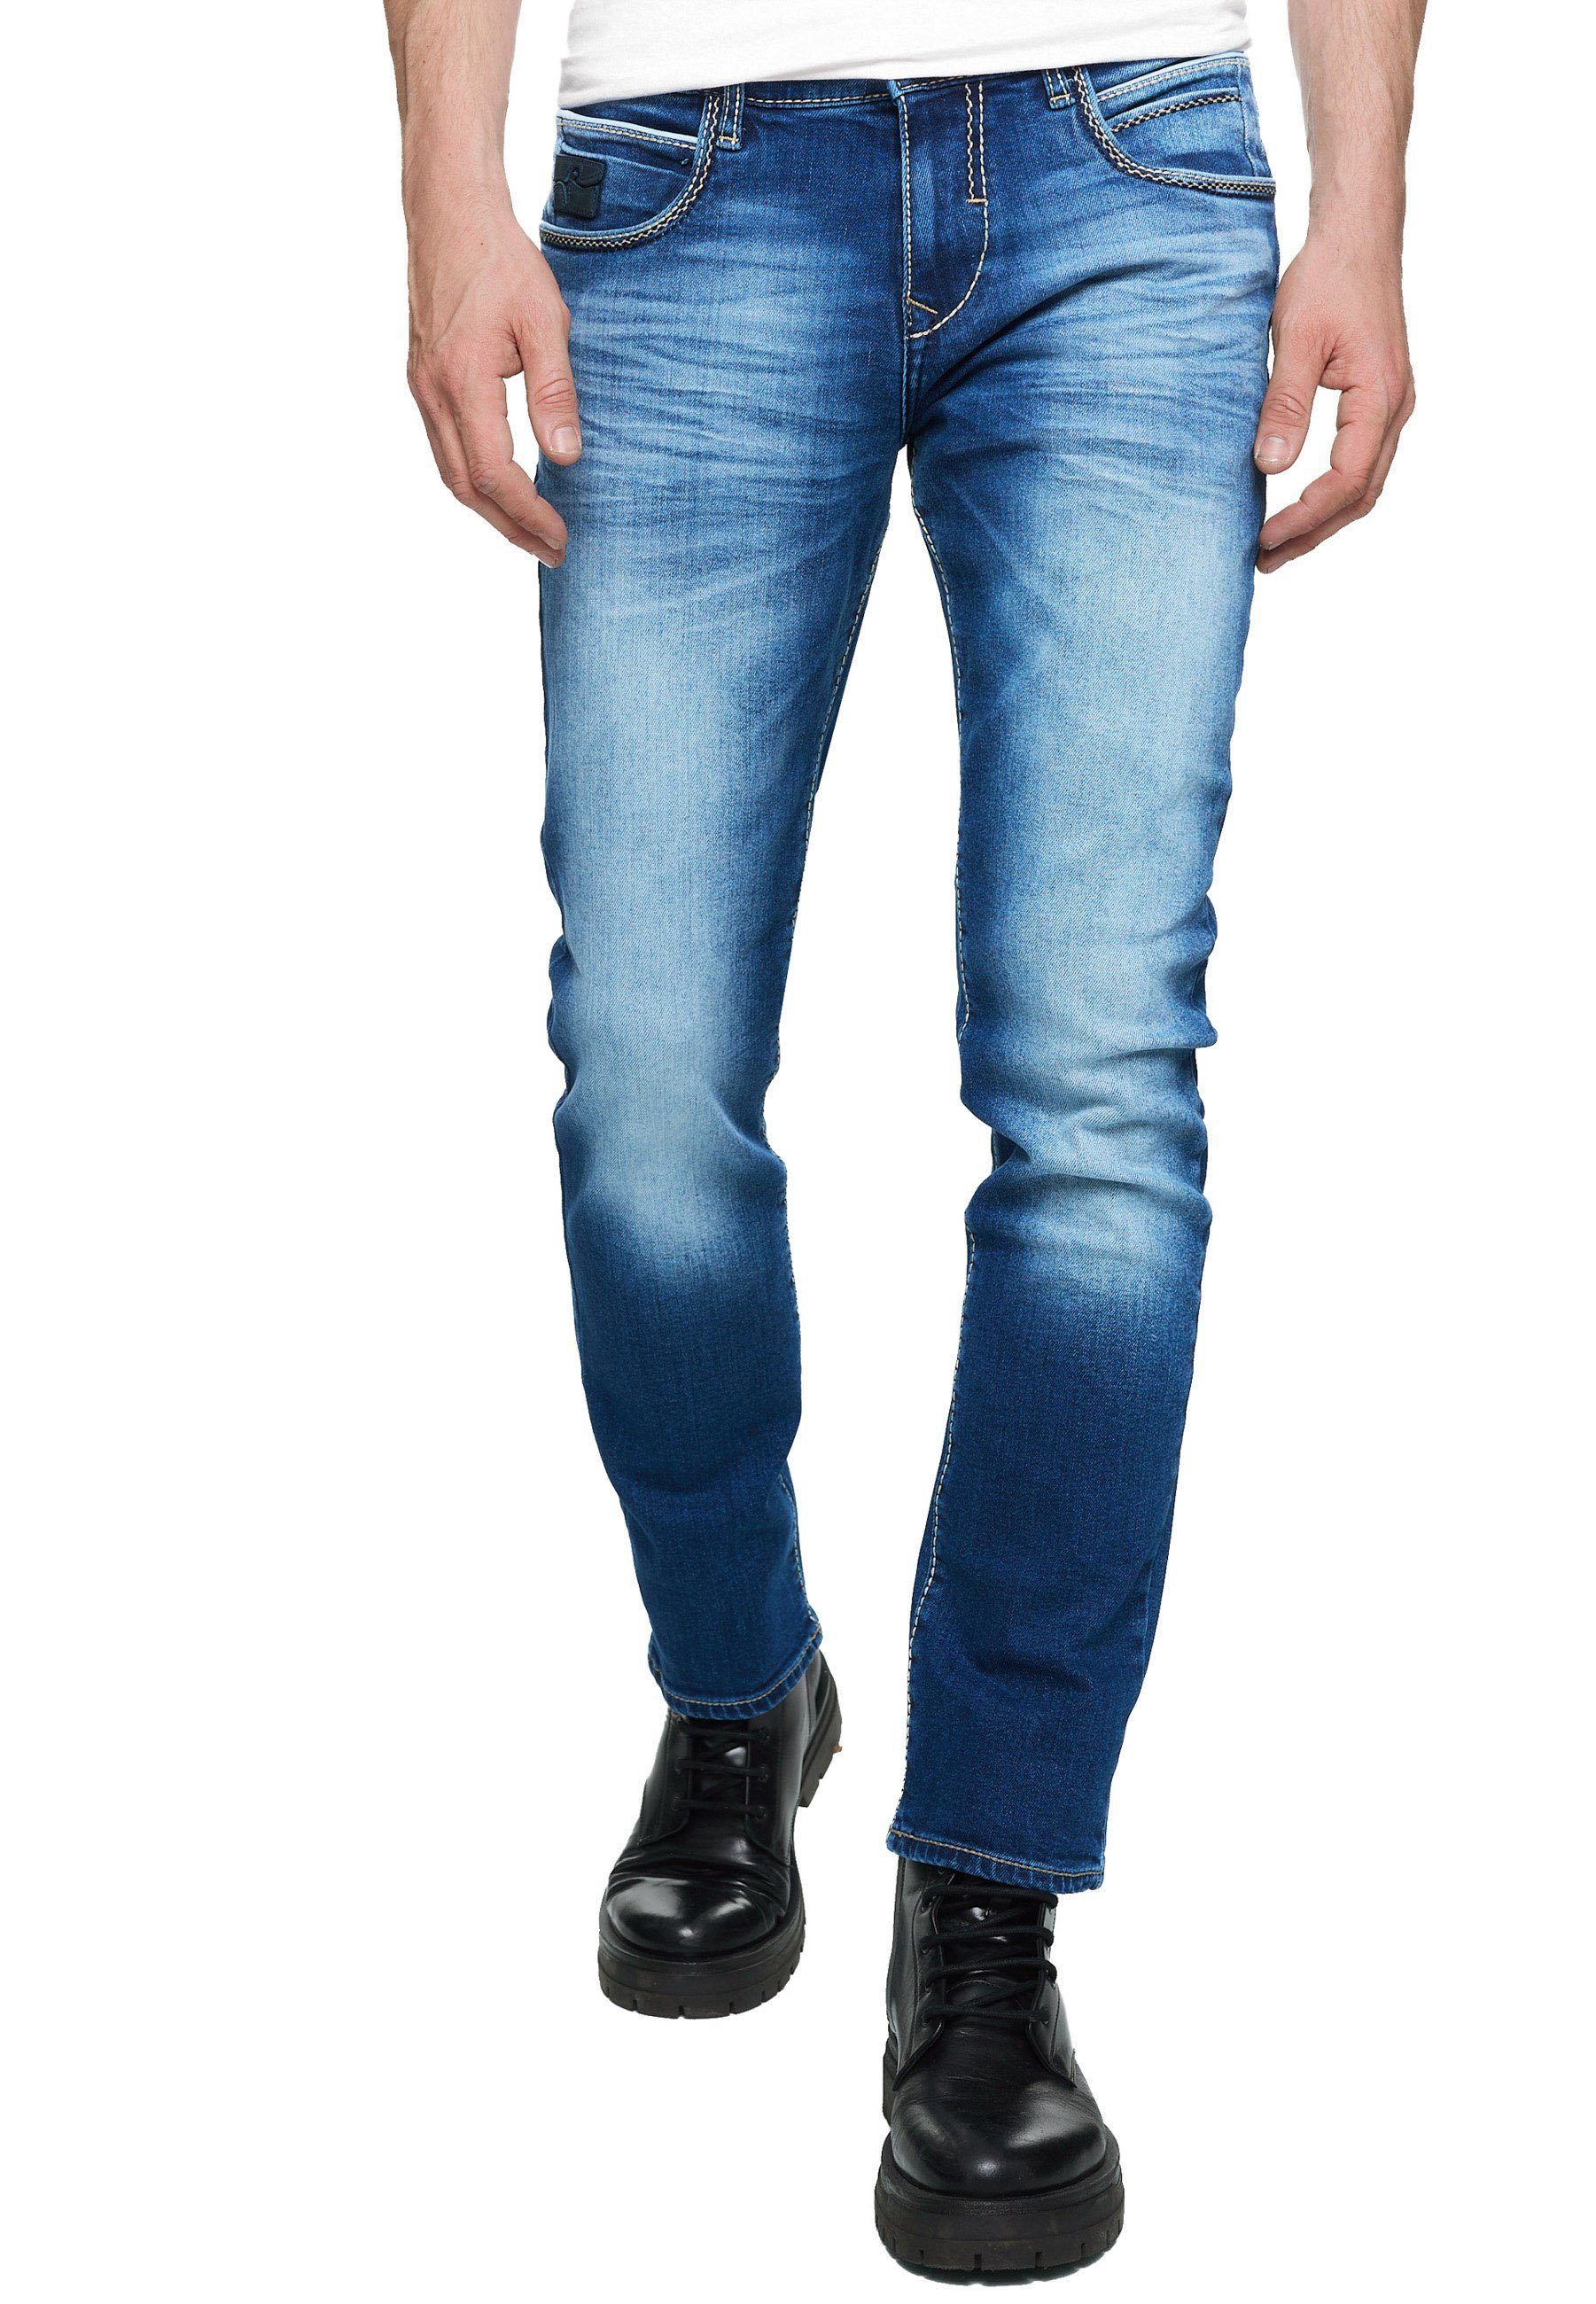 Rusty Neal Straight-Jeans TOYAMA mit coolen Kontrastnähten dunkelblau